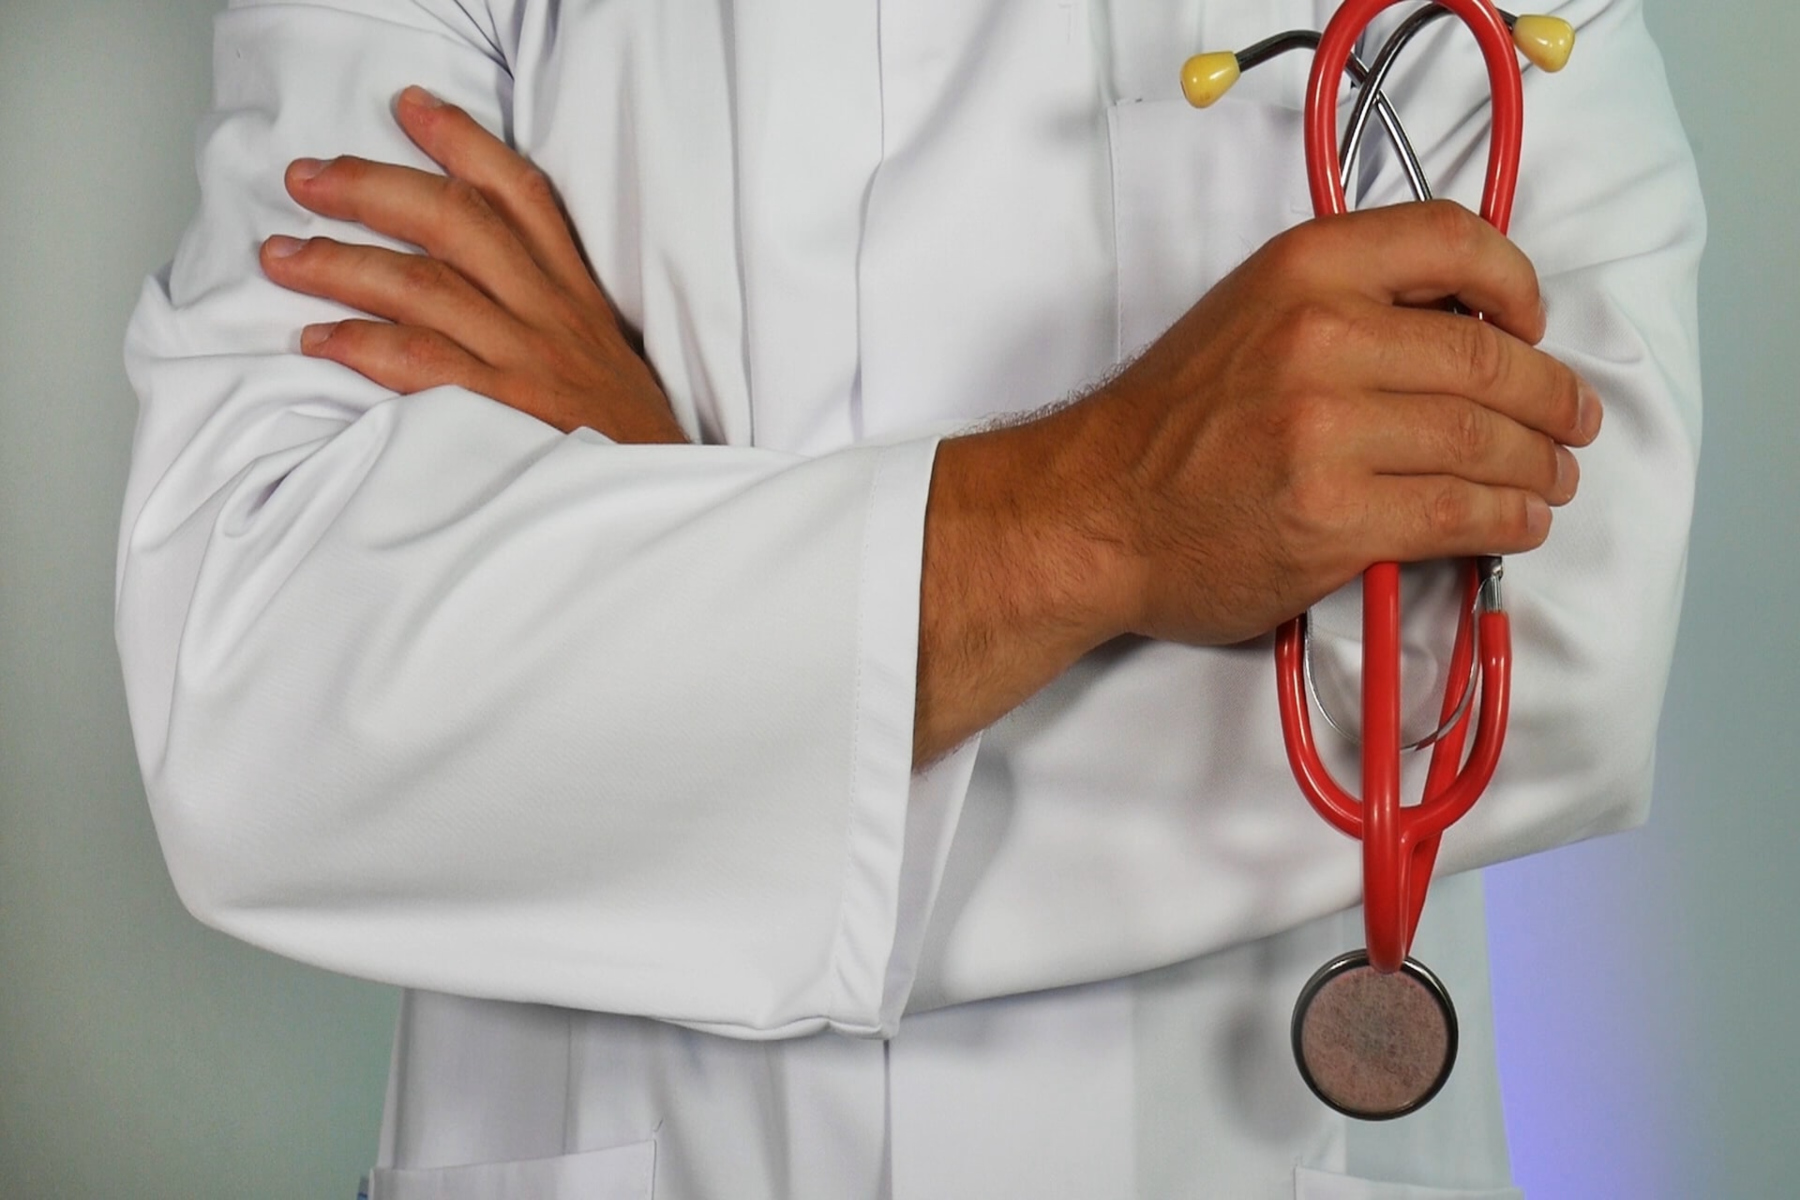 Προσωπικός Γιατρός: Πάνω από 4 εκ. οι εγγραφές των πολιτών στον Προσωπικό Γιατρό